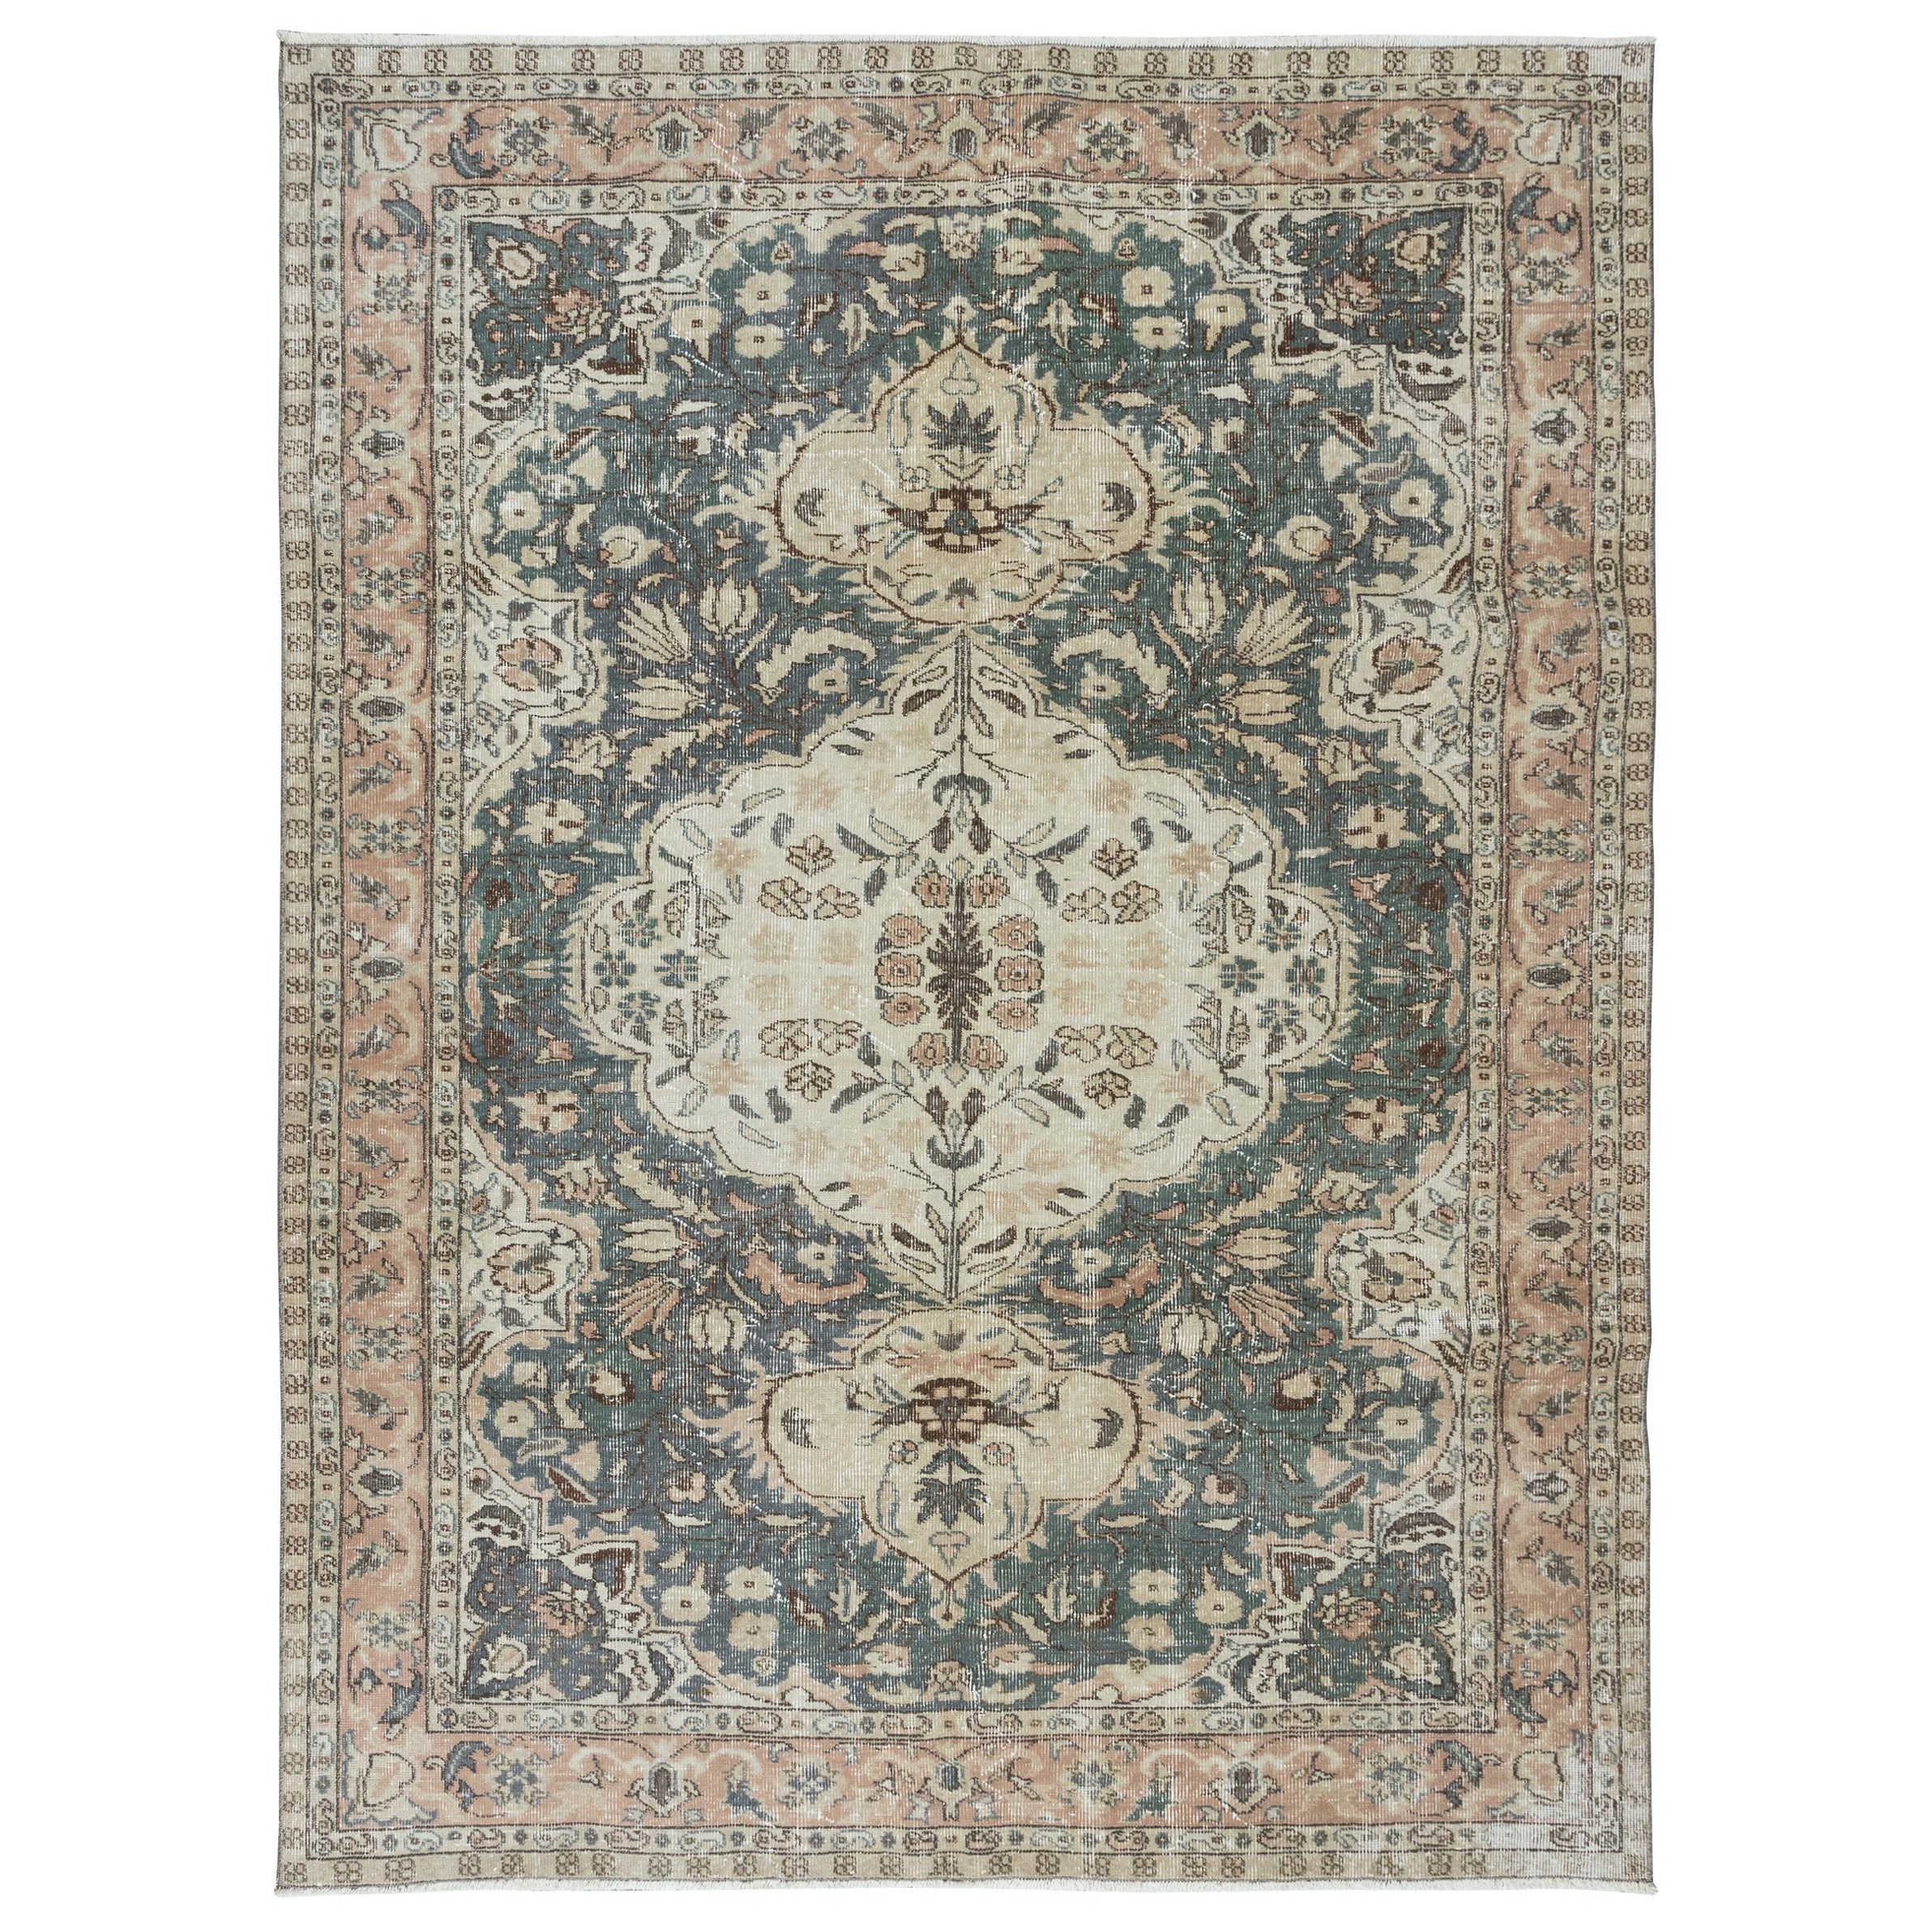 Einzigartiger handgefertigter Vintage-Teppich, 6.3x8,5 Fuß, traditioneller türkischer Teppich